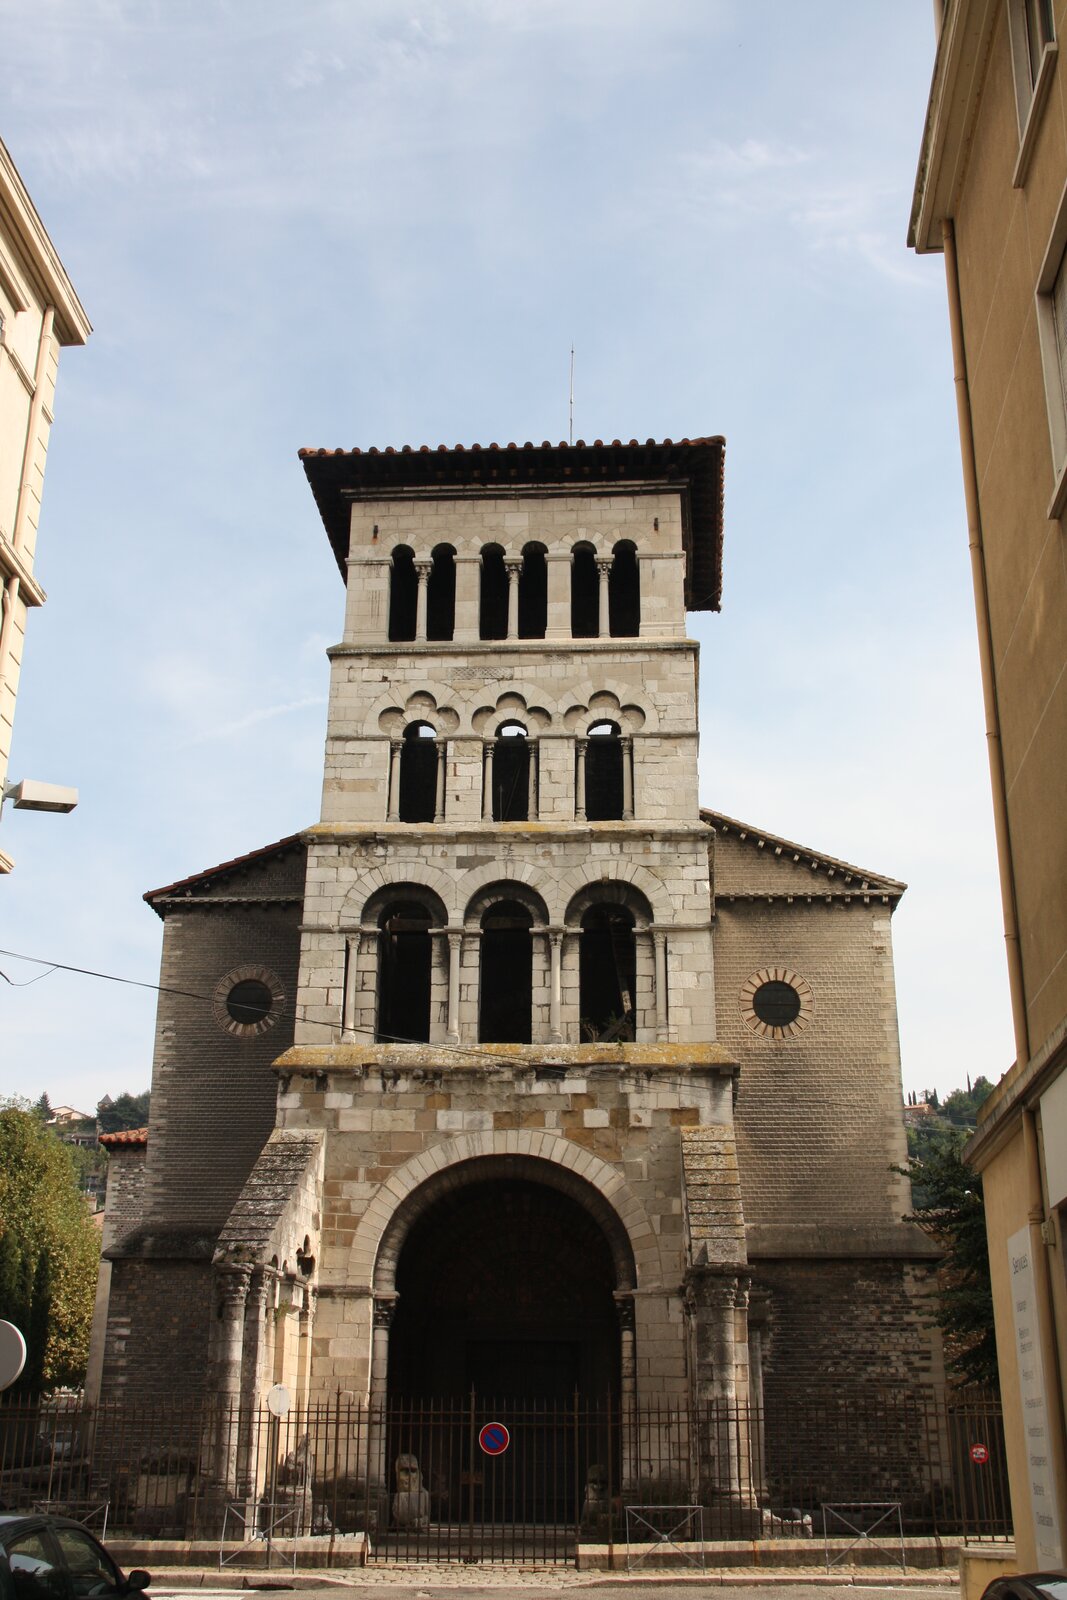 Zdjęcie przedstawia widok współczesny na fasadę kościoła pw. św. Marcina w Vienne we Francji. Fasada jest jednocześnie wysoką wieżą. Na parterze znajduje się duże wejście, wokół którego znajduje się romański portal. Powyżej dwa rzędy portali: pierwszy o łukach pełnych, drugi trójlistny. Otwory okienne przedzielone są kolumnami. Na szczycie wieży widoczne trzy otwory o charakterze portalu rozdzielone kolumną. Na szczycie wieży płaski dach. Po obu bokach wieży widoczne ściany zewnętrzne z okrągłymi, małymi oknami oraz skośnym dachem. Budynek oddzielony od ulicy metalowym płotem, widoczny na bramie znak zakazu zatrzymania. Przy obu krawędziach zdjęcia fragmenty sąsiadujących z kościołem budynków. Niebo pogodne. W tle zieleń - korony drzew.